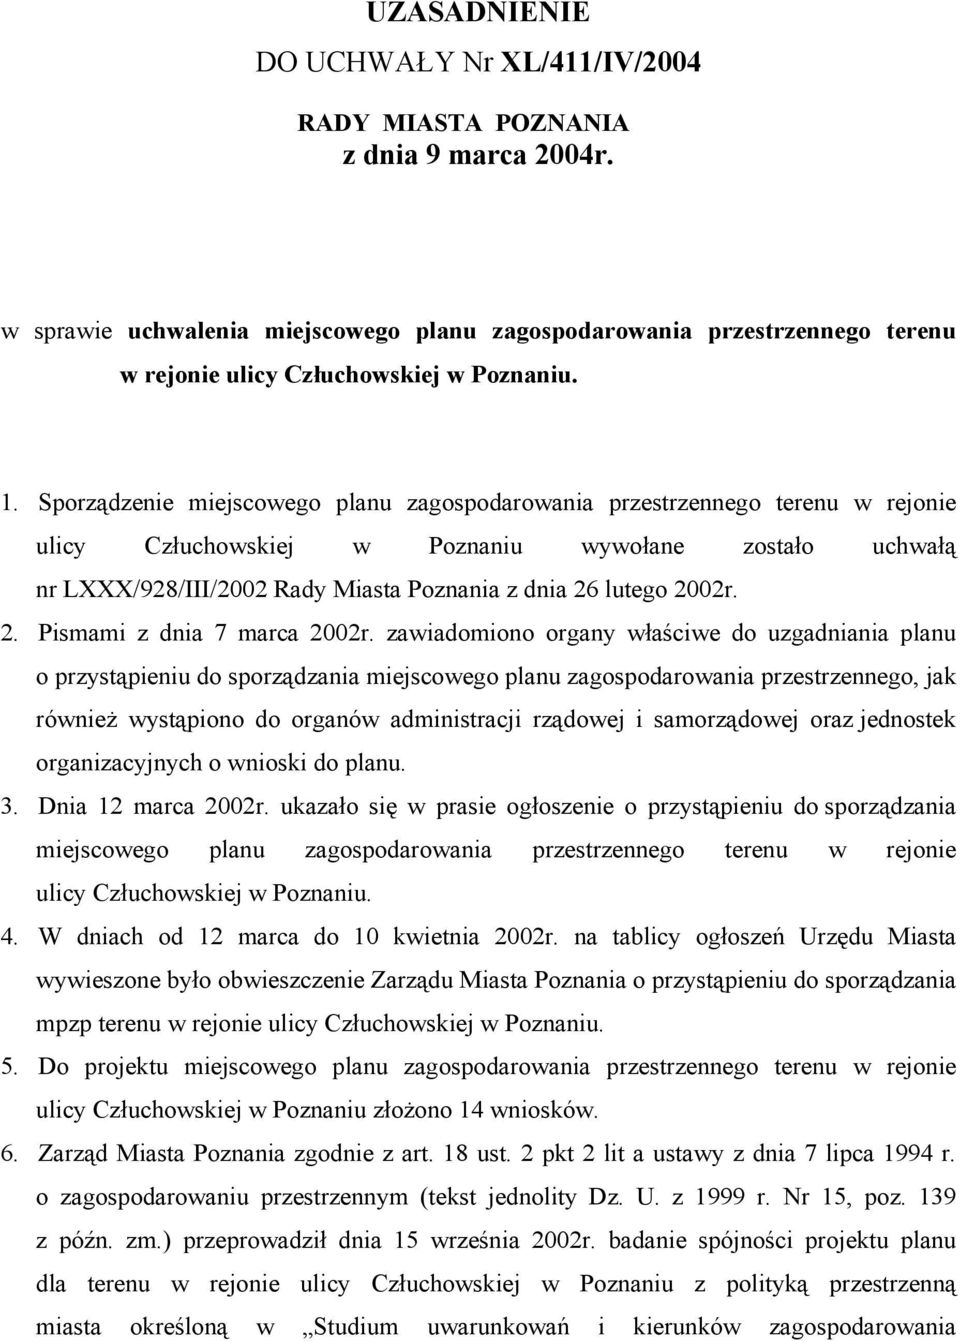 Sporządzenie miejscowego planu zagospodarowania przestrzennego terenu w rejonie ulicy Człuchowskiej w Poznaniu wywołane zostało uchwałą nr LXXX/928/III/2002 Rady Miasta Poznania z dnia 26 lutego